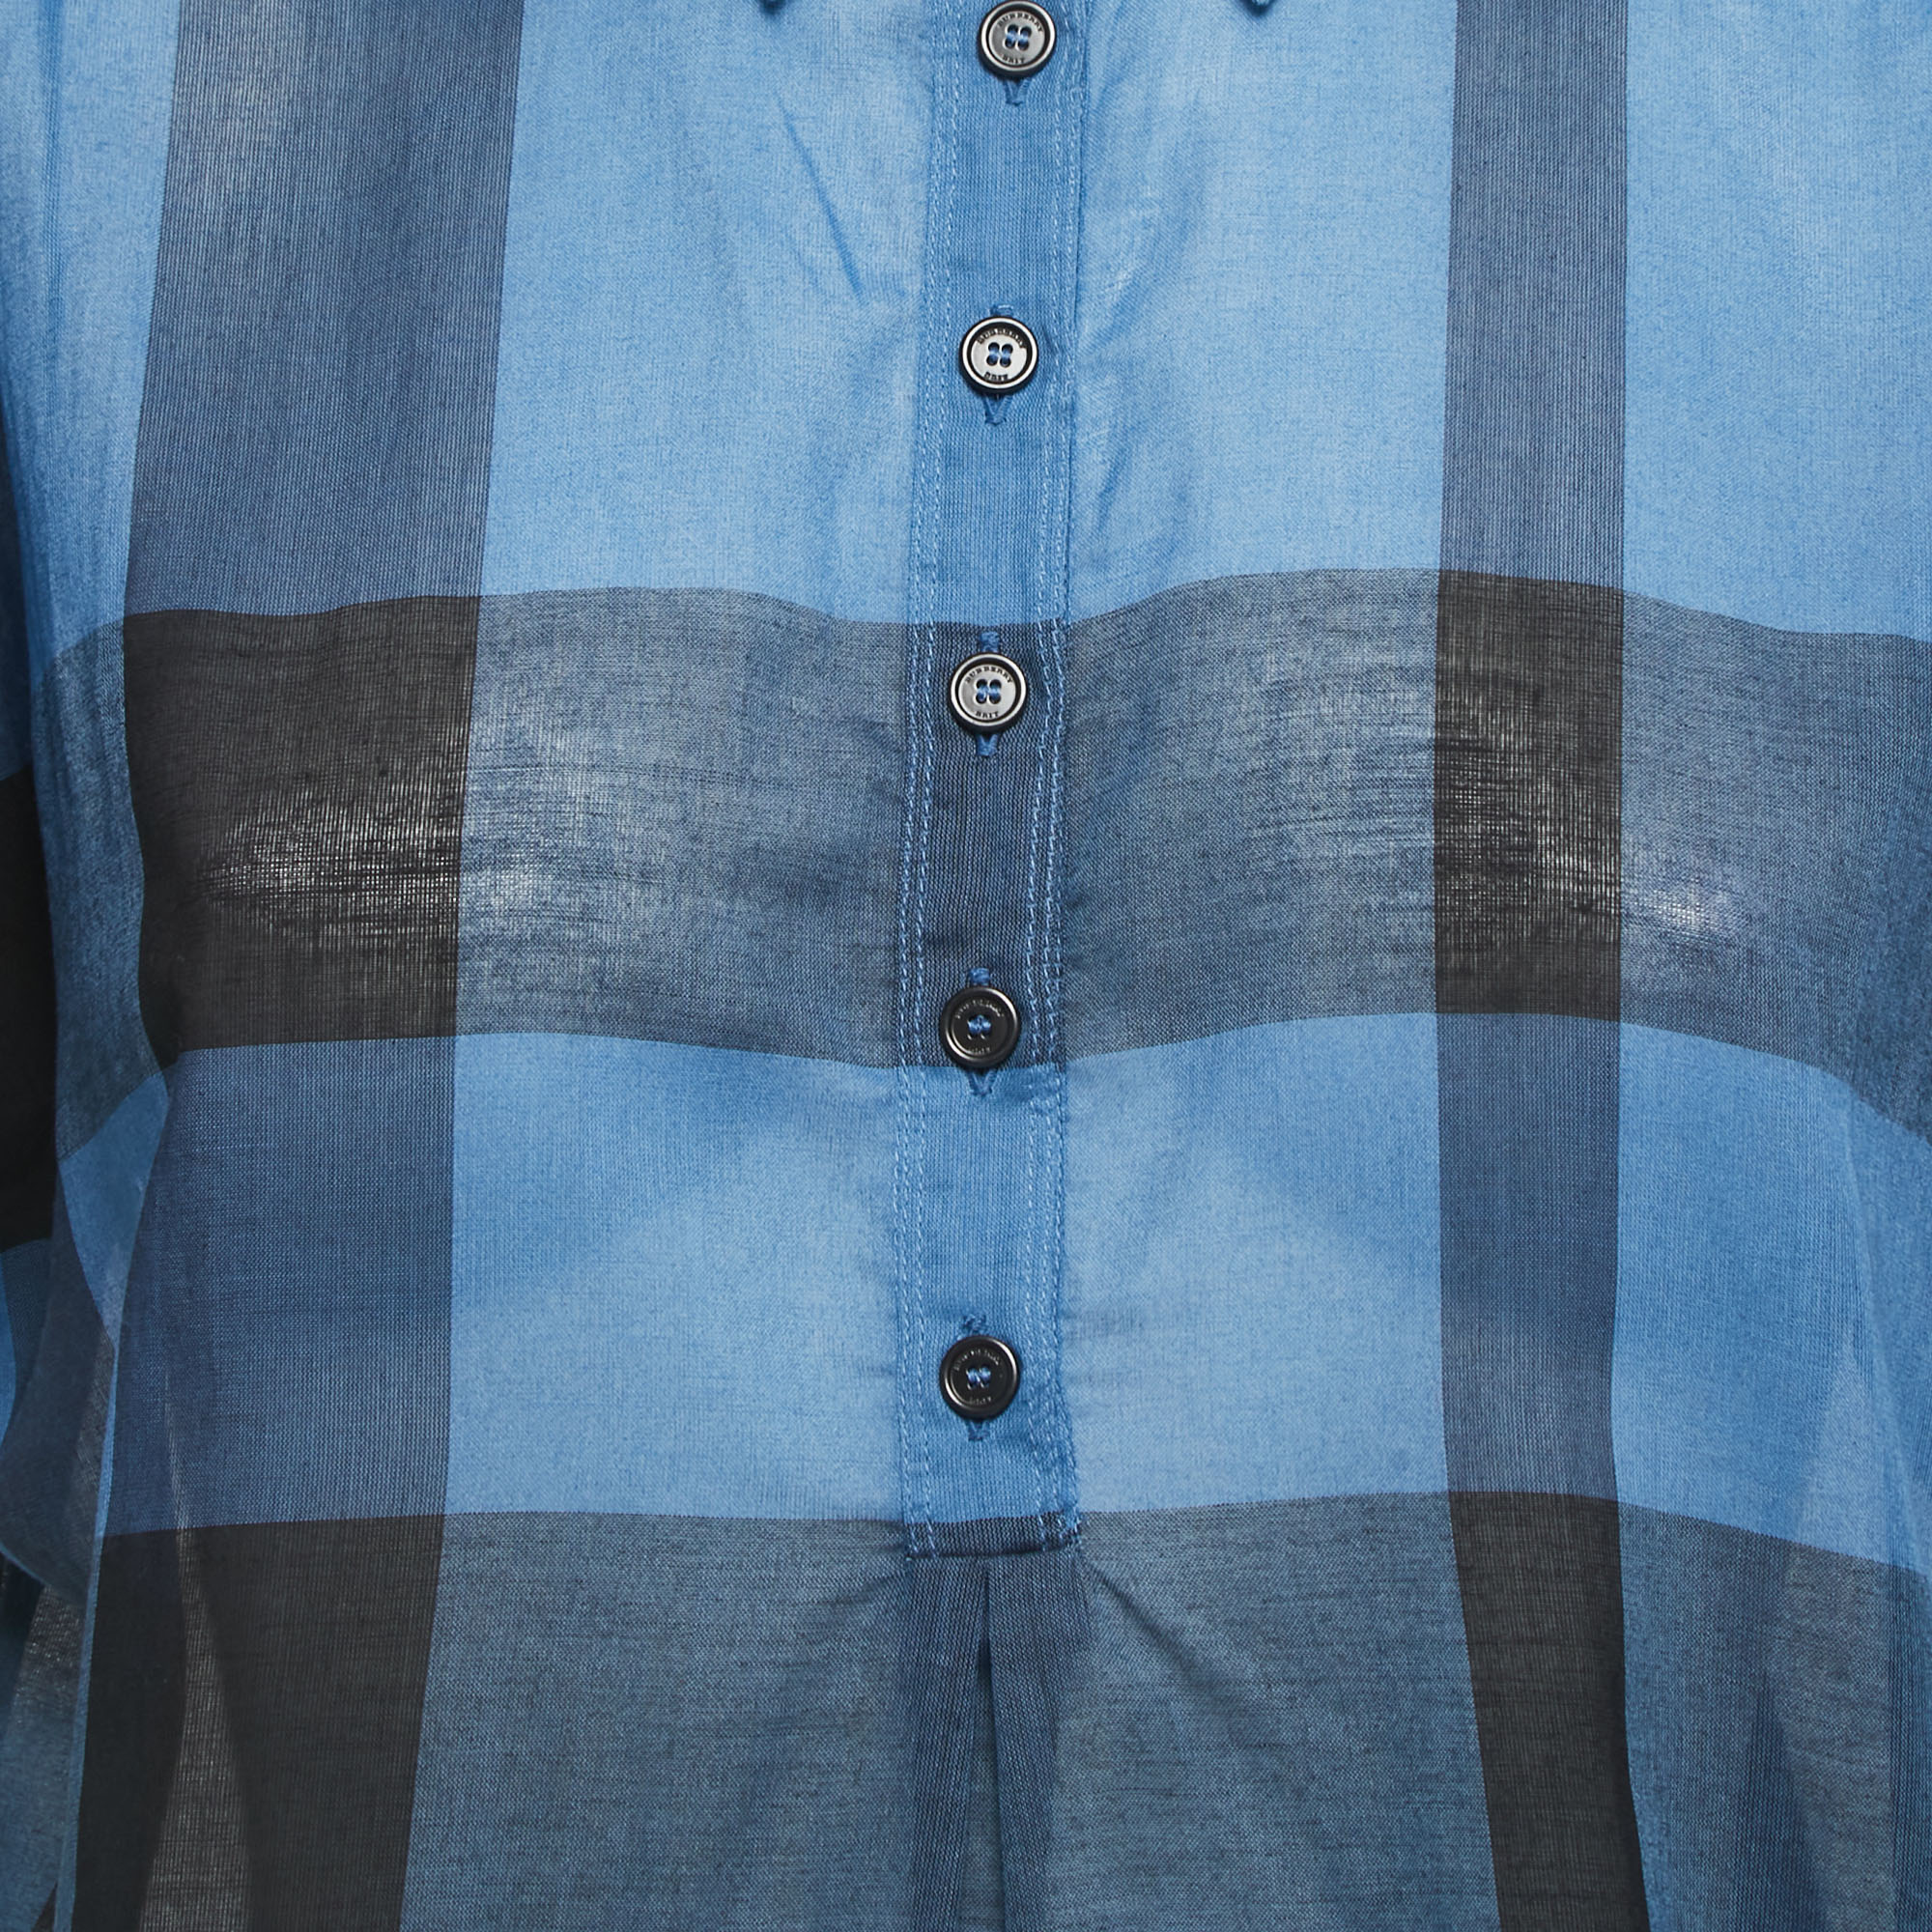 Burberry Brit Blue Plaid Cotton Shirt Blouse L